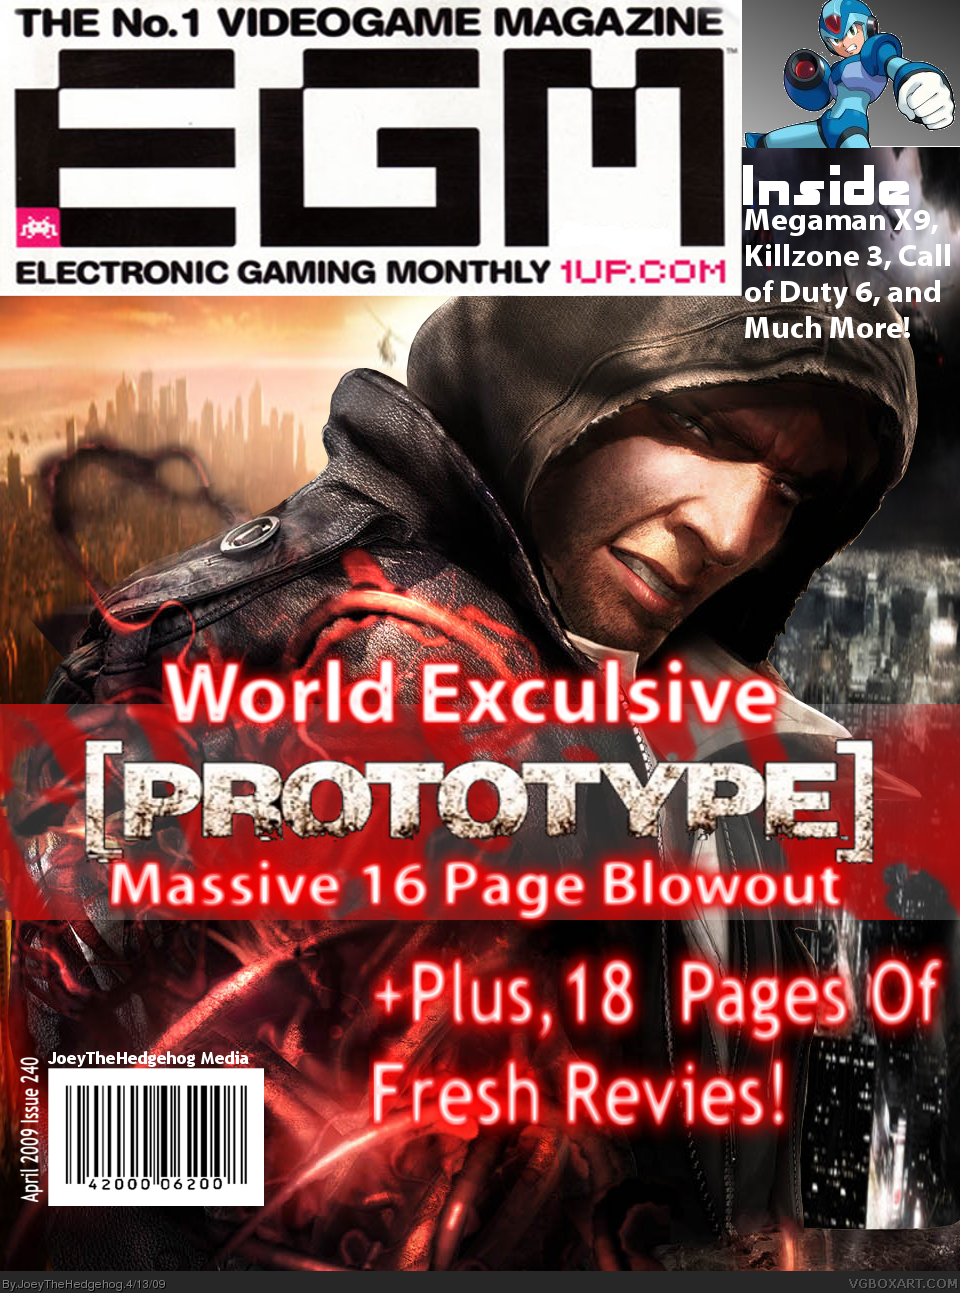 EGM Magazine (Prototype) box cover